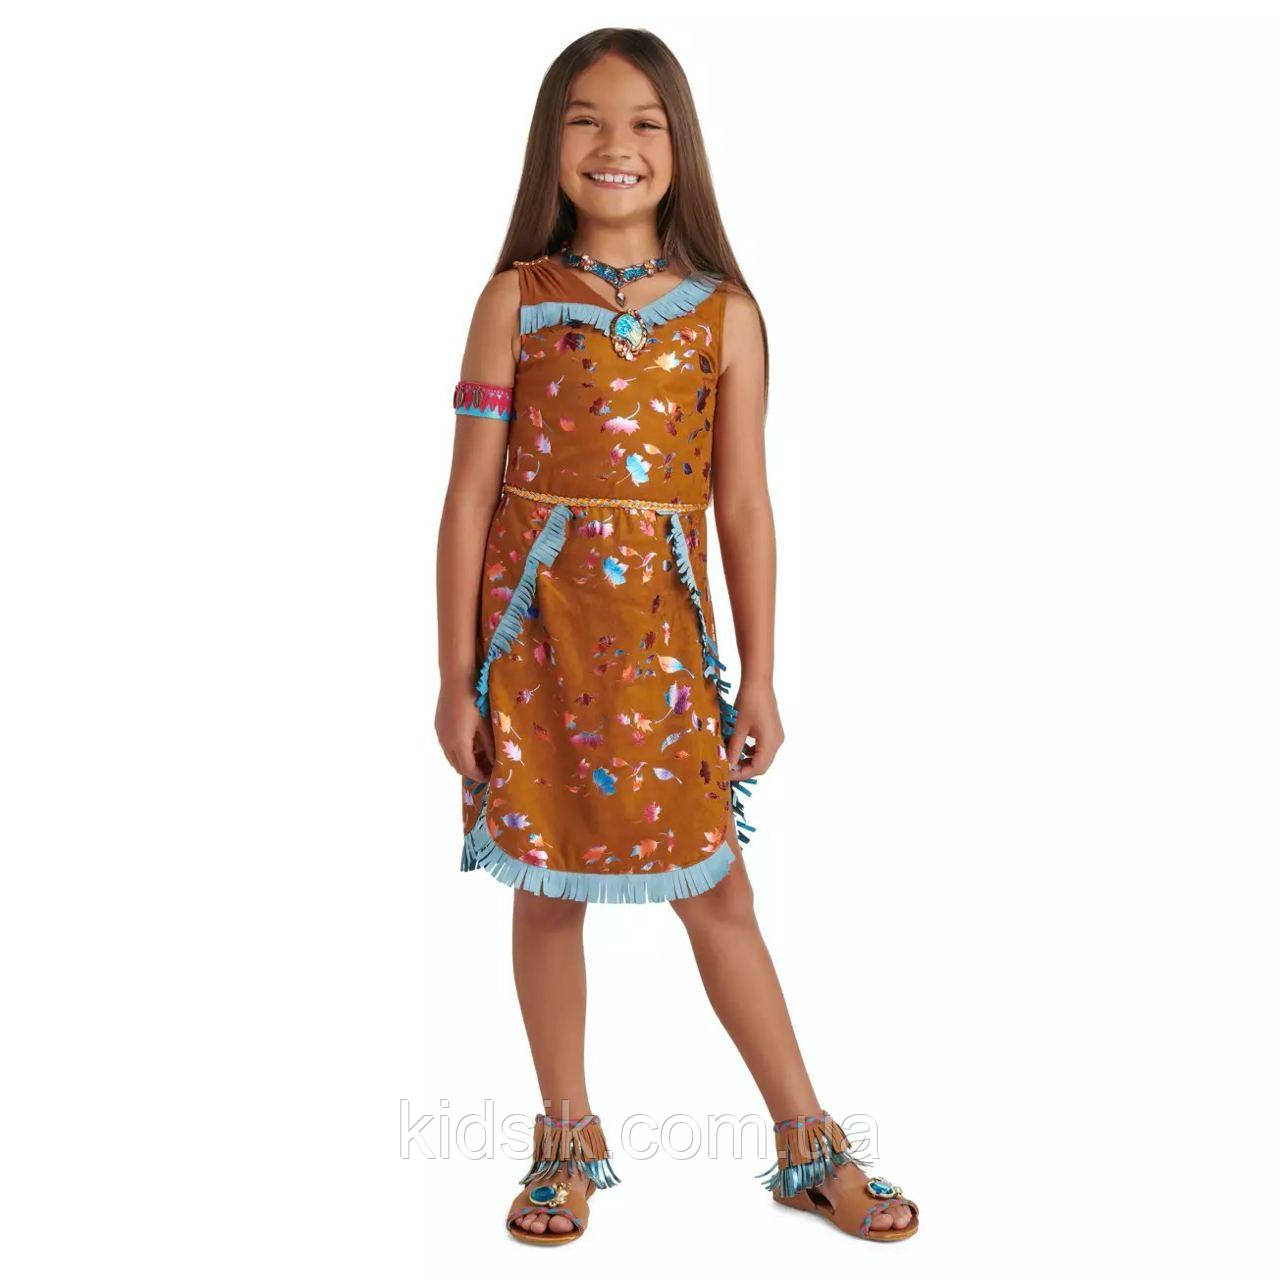 Карнавальна сукня принцеси Покахонтас Дісней, Pocahontas Disney 2021